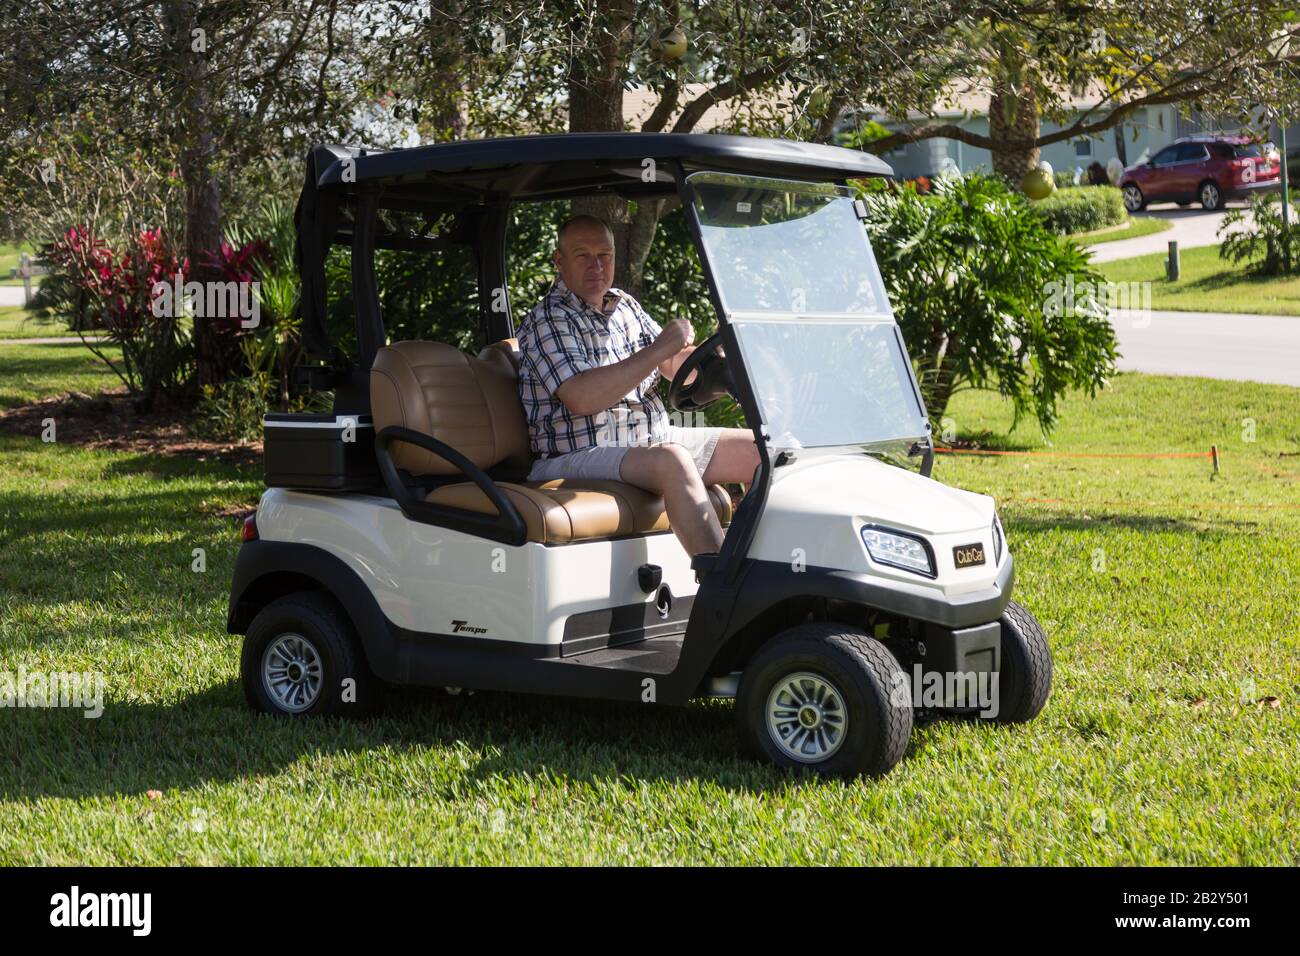 Un hombre que lleva una camisa de cuadros y pantalones cortos conduce un carrito de golf Club Car Tempo a través de la hierba de una casa en Palm City, Florida. Foto de stock